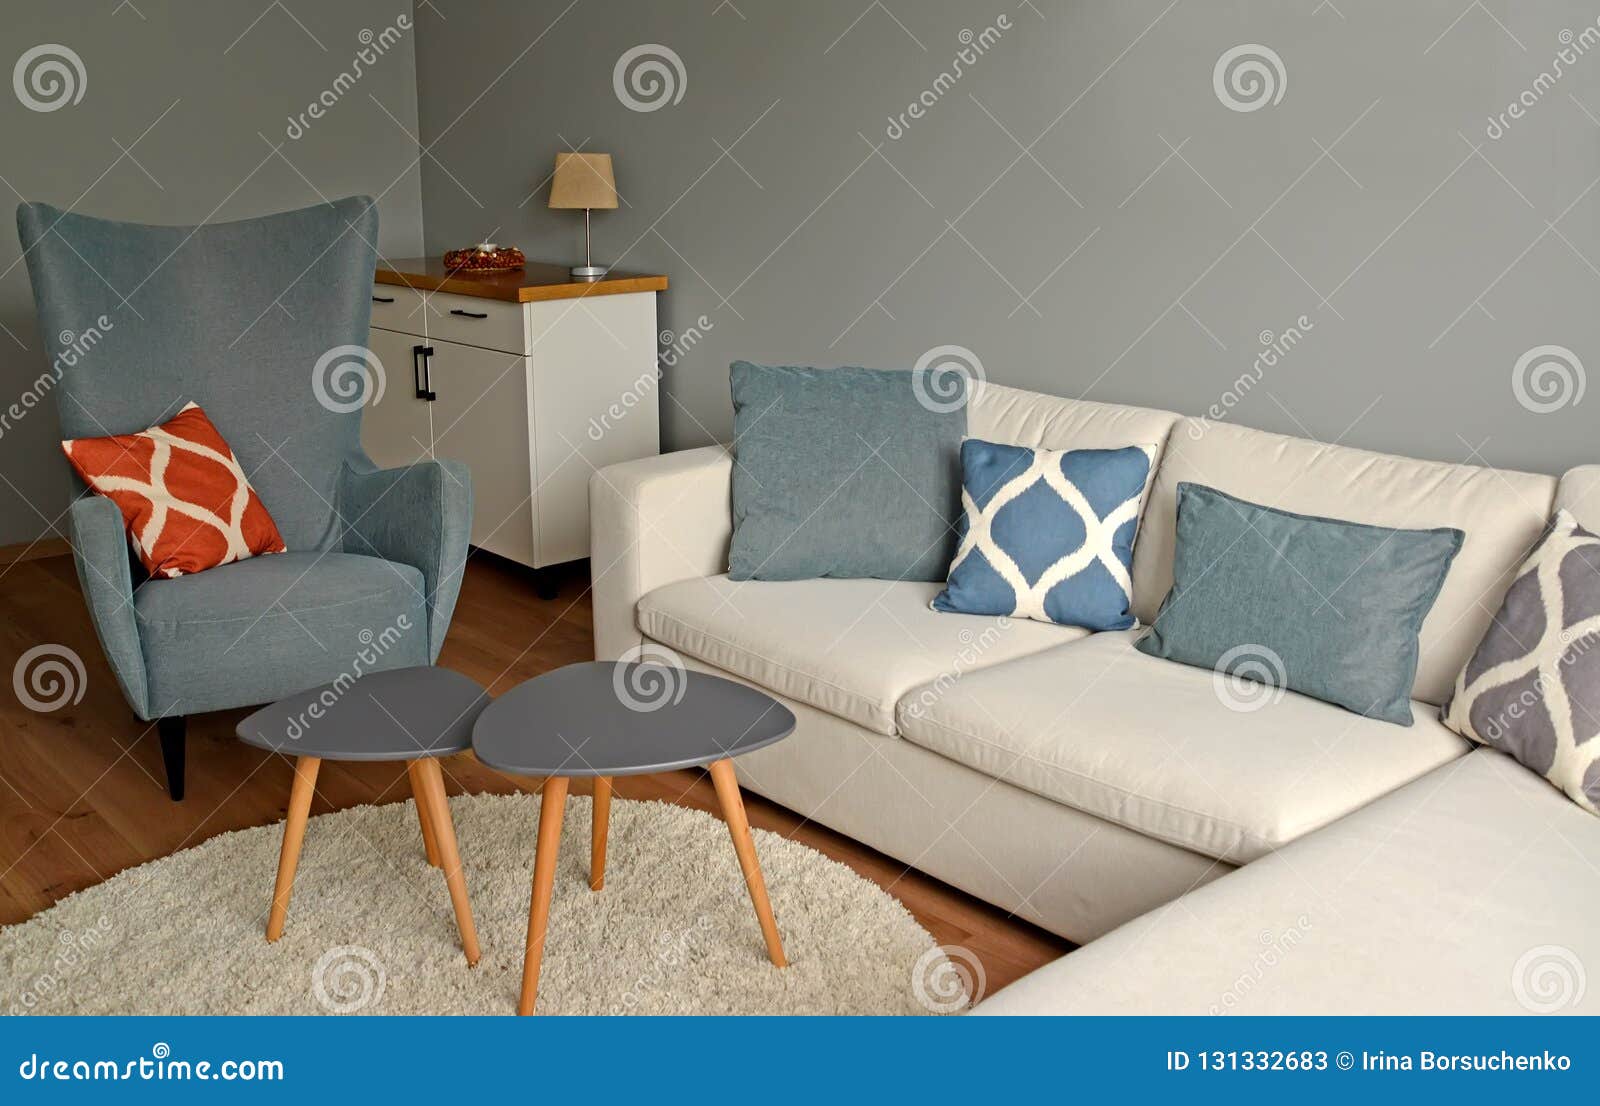 Genuino Escudriñar carga Muebles Tapizados En Un Interior De La Sala De Estar Estilo Escandinavo  Imagen de archivo - Imagen de sitio, estilo: 131332683